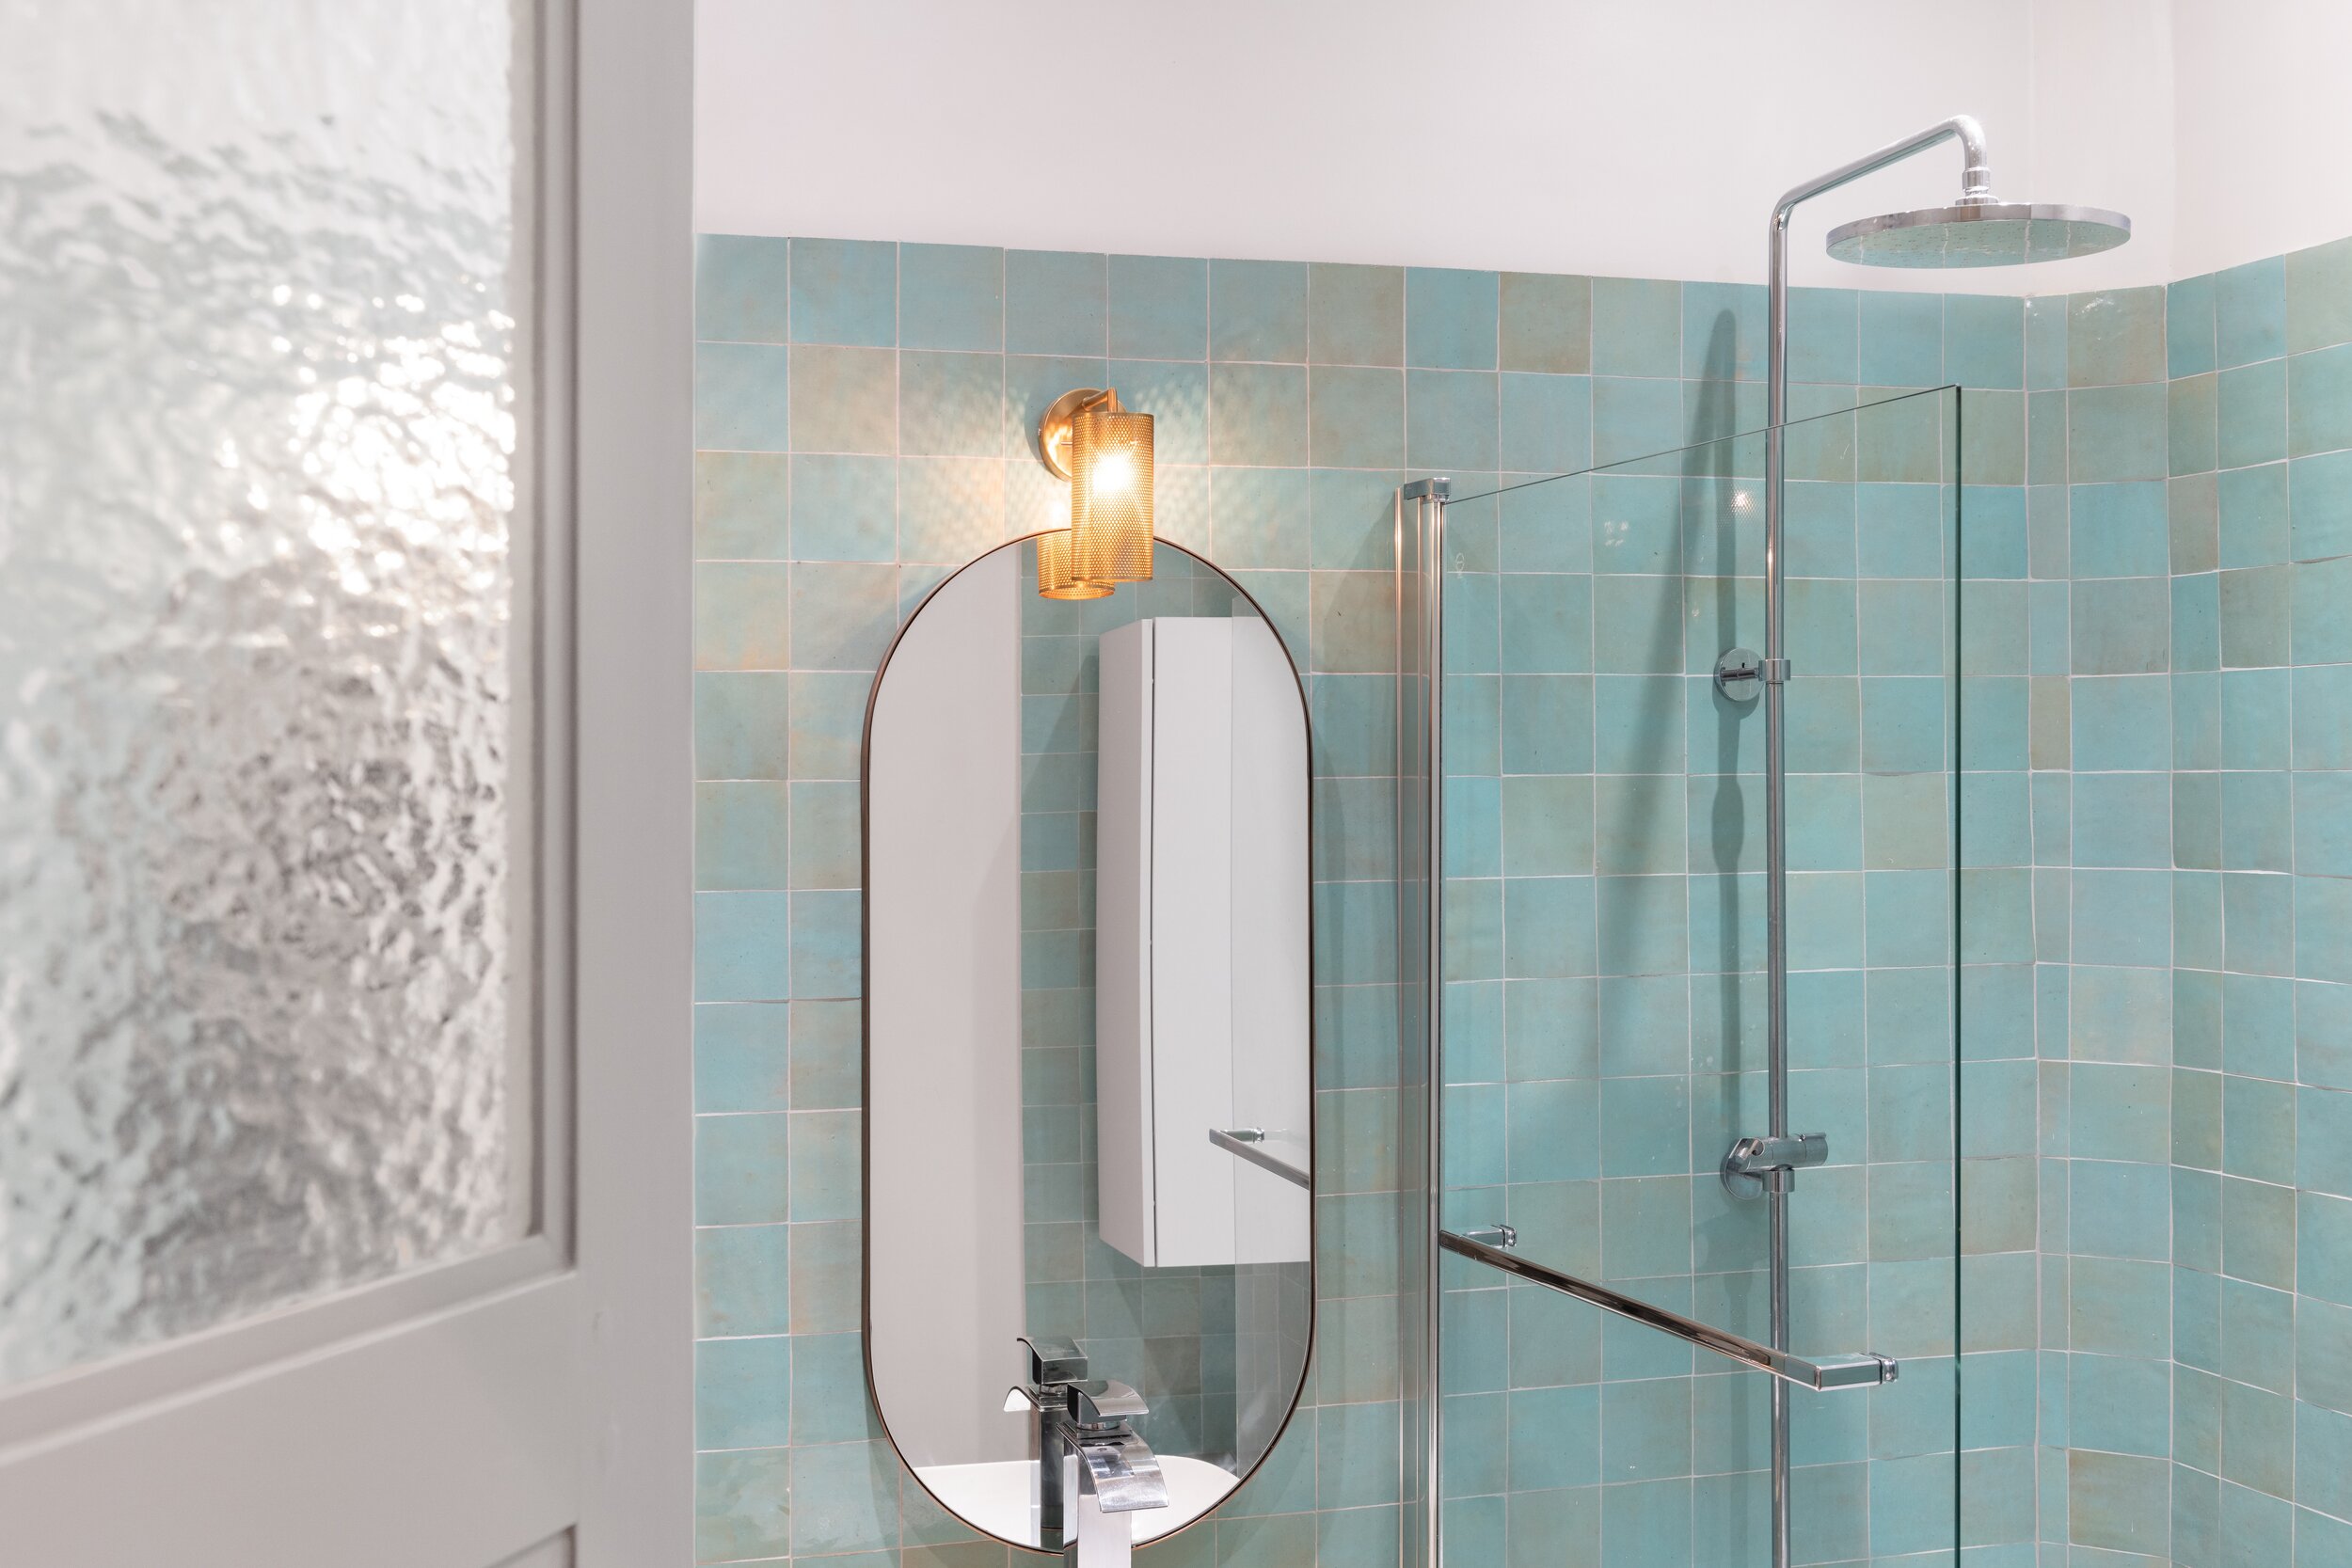 Salle de bain-zelliges-vert-miroir-decoration-interieure-architecte-paris-detail.jpg